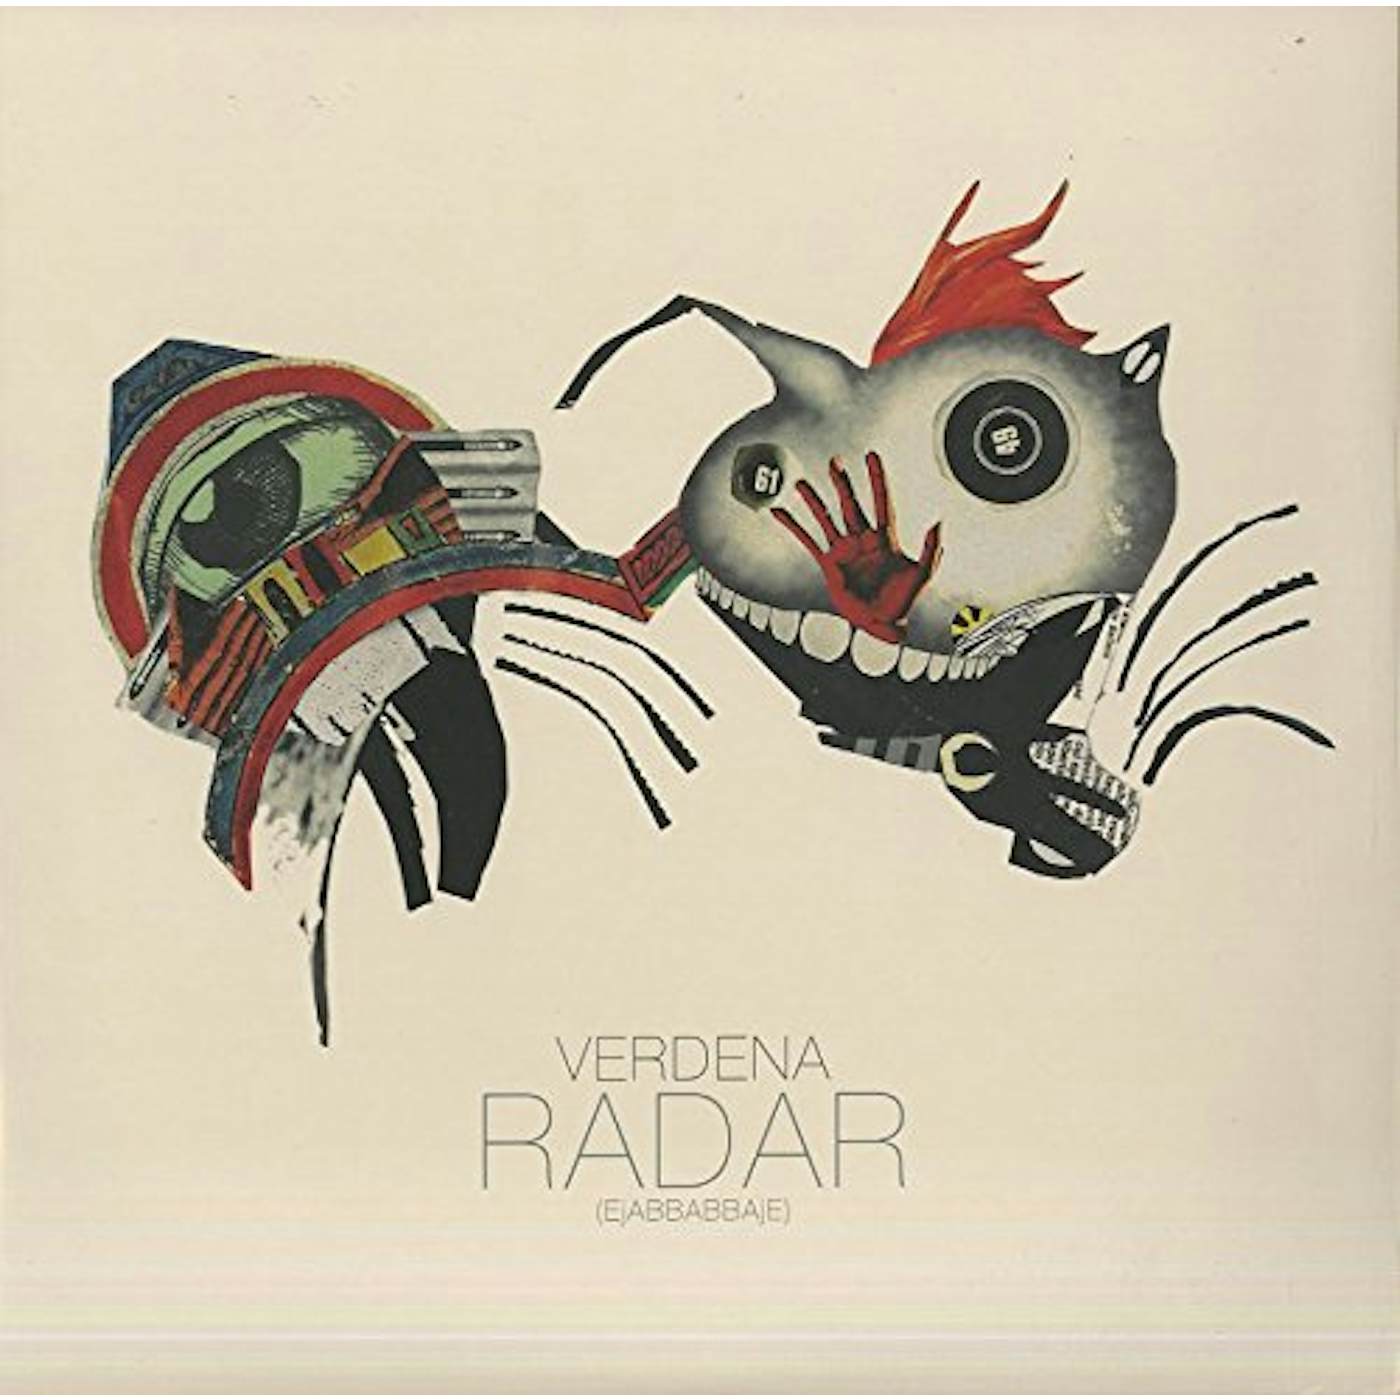 Verdena RADAR (EJABBABBAJE) Vinyl Record